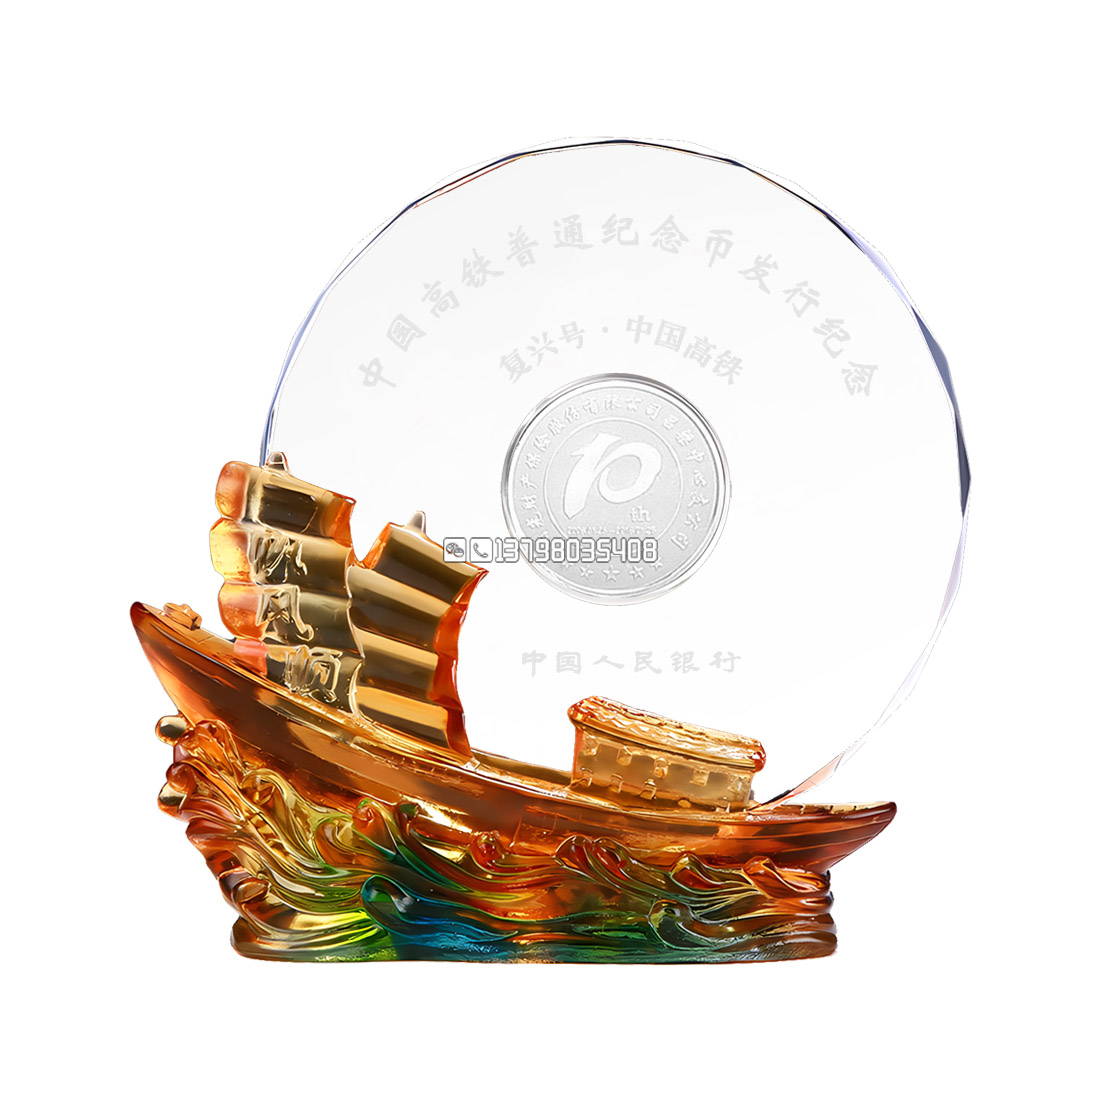 琉璃帆船-银币-银行纪念牌-磨砂字-137水印